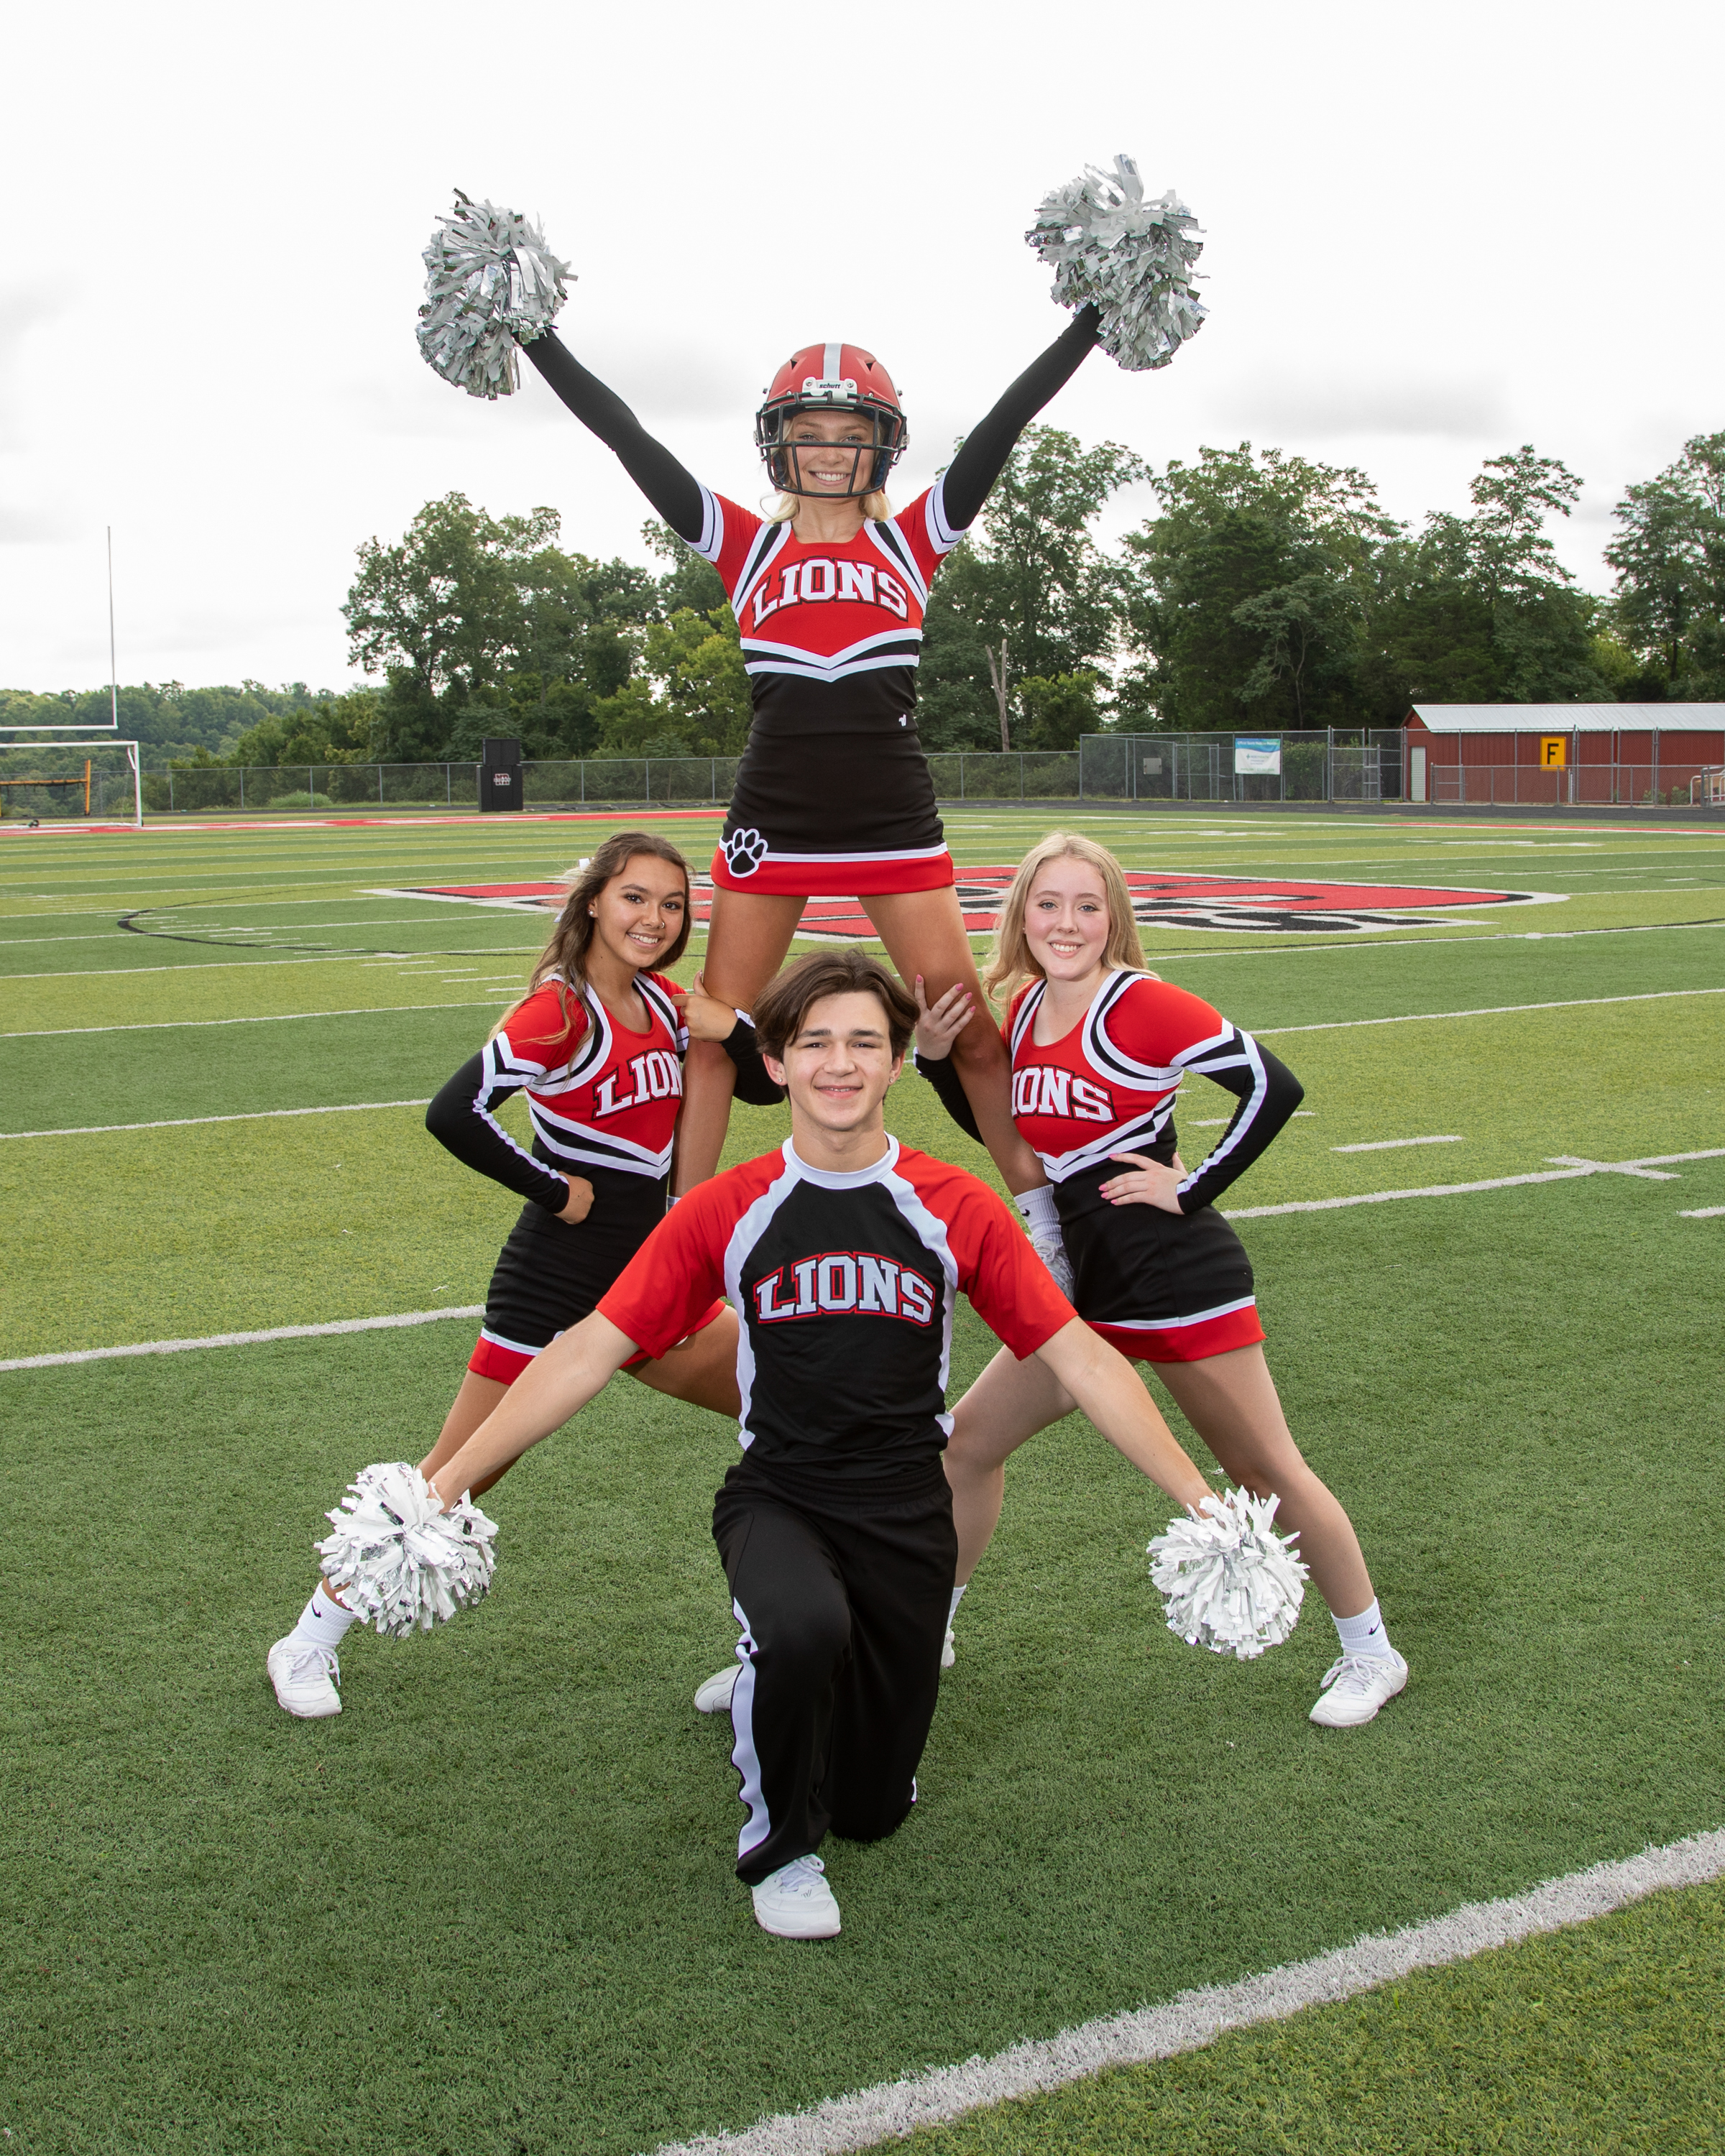 Four cheerleaders posing